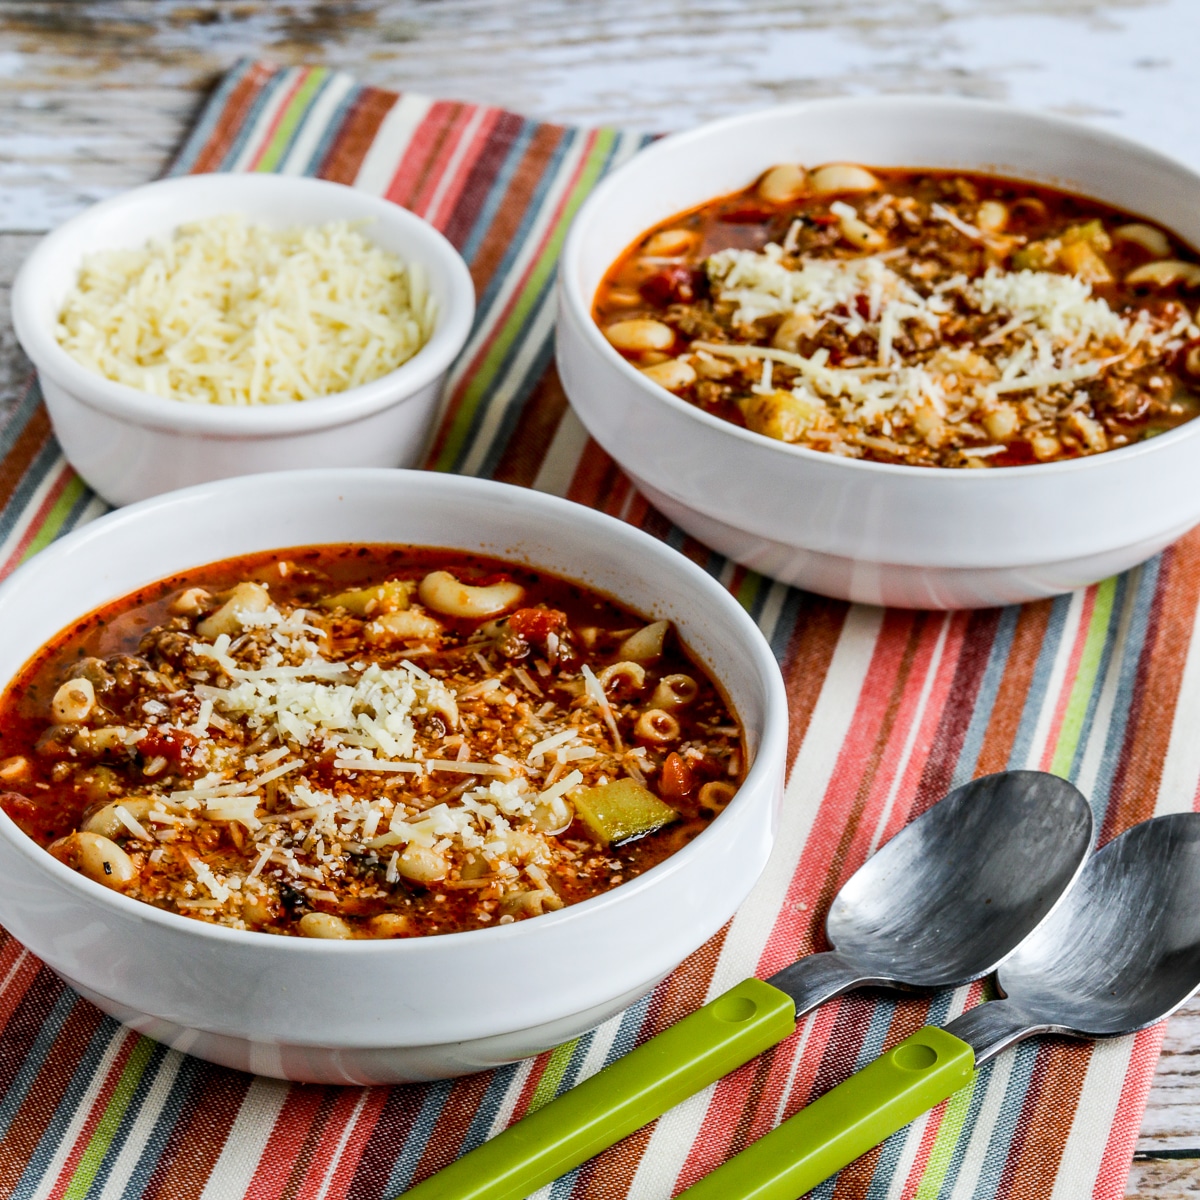 Image carrée de soupe italienne à la saucisse, aux courgettes et aux macaronis avec soupe dans deux bols, serviette rayée, cuillères et parmesan.